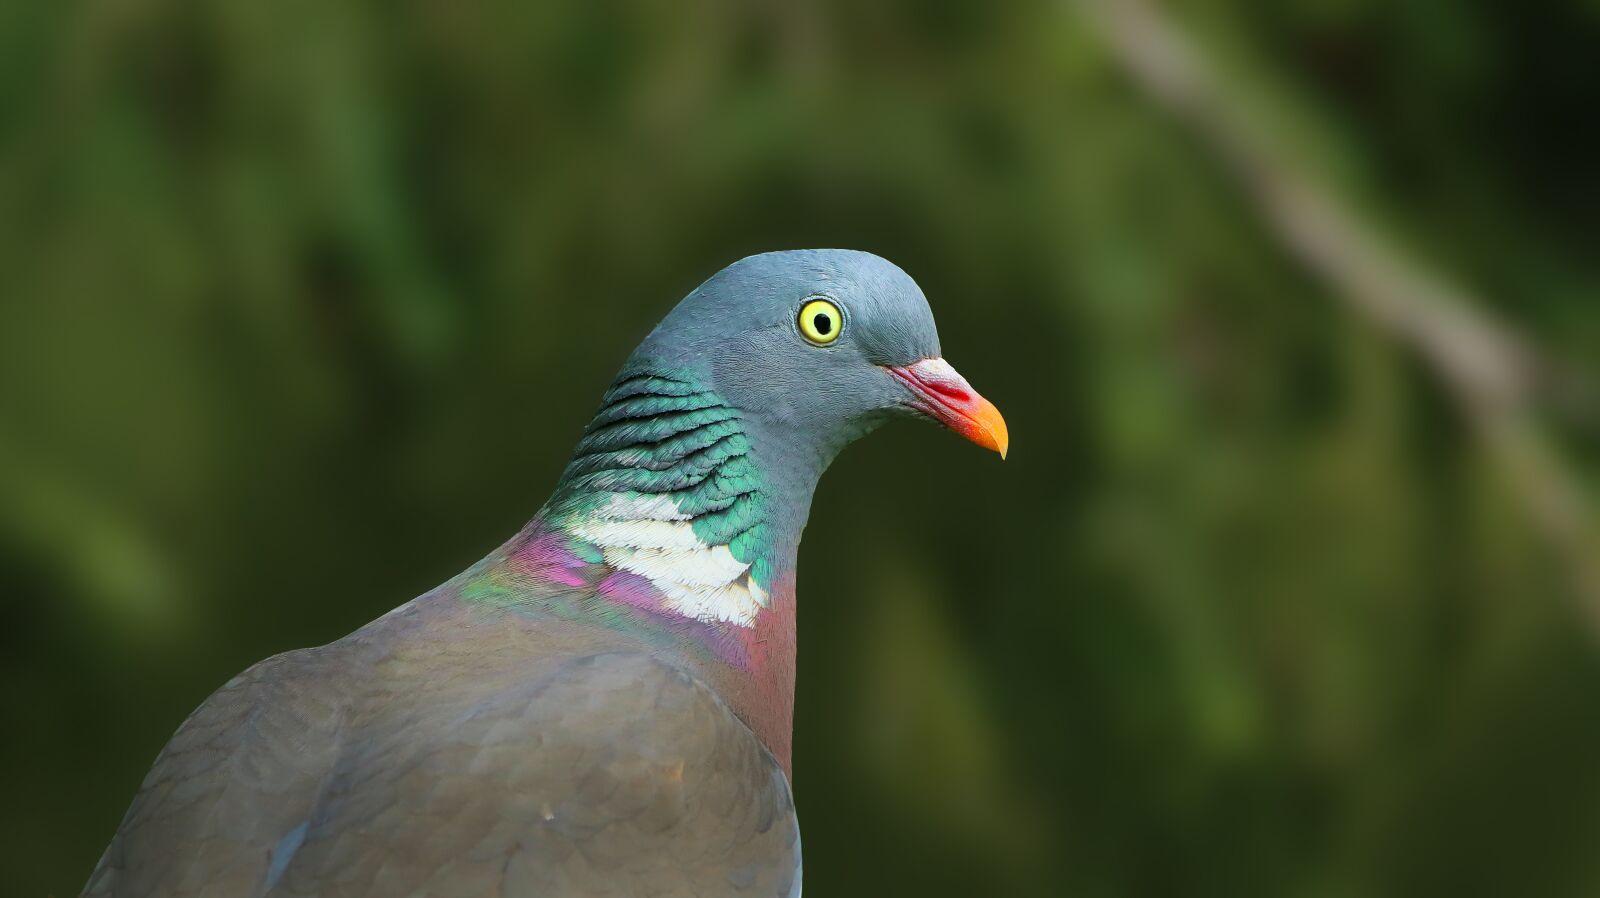 Canon EOS M50 (EOS Kiss M) sample photo. Dove, bird, feather photography